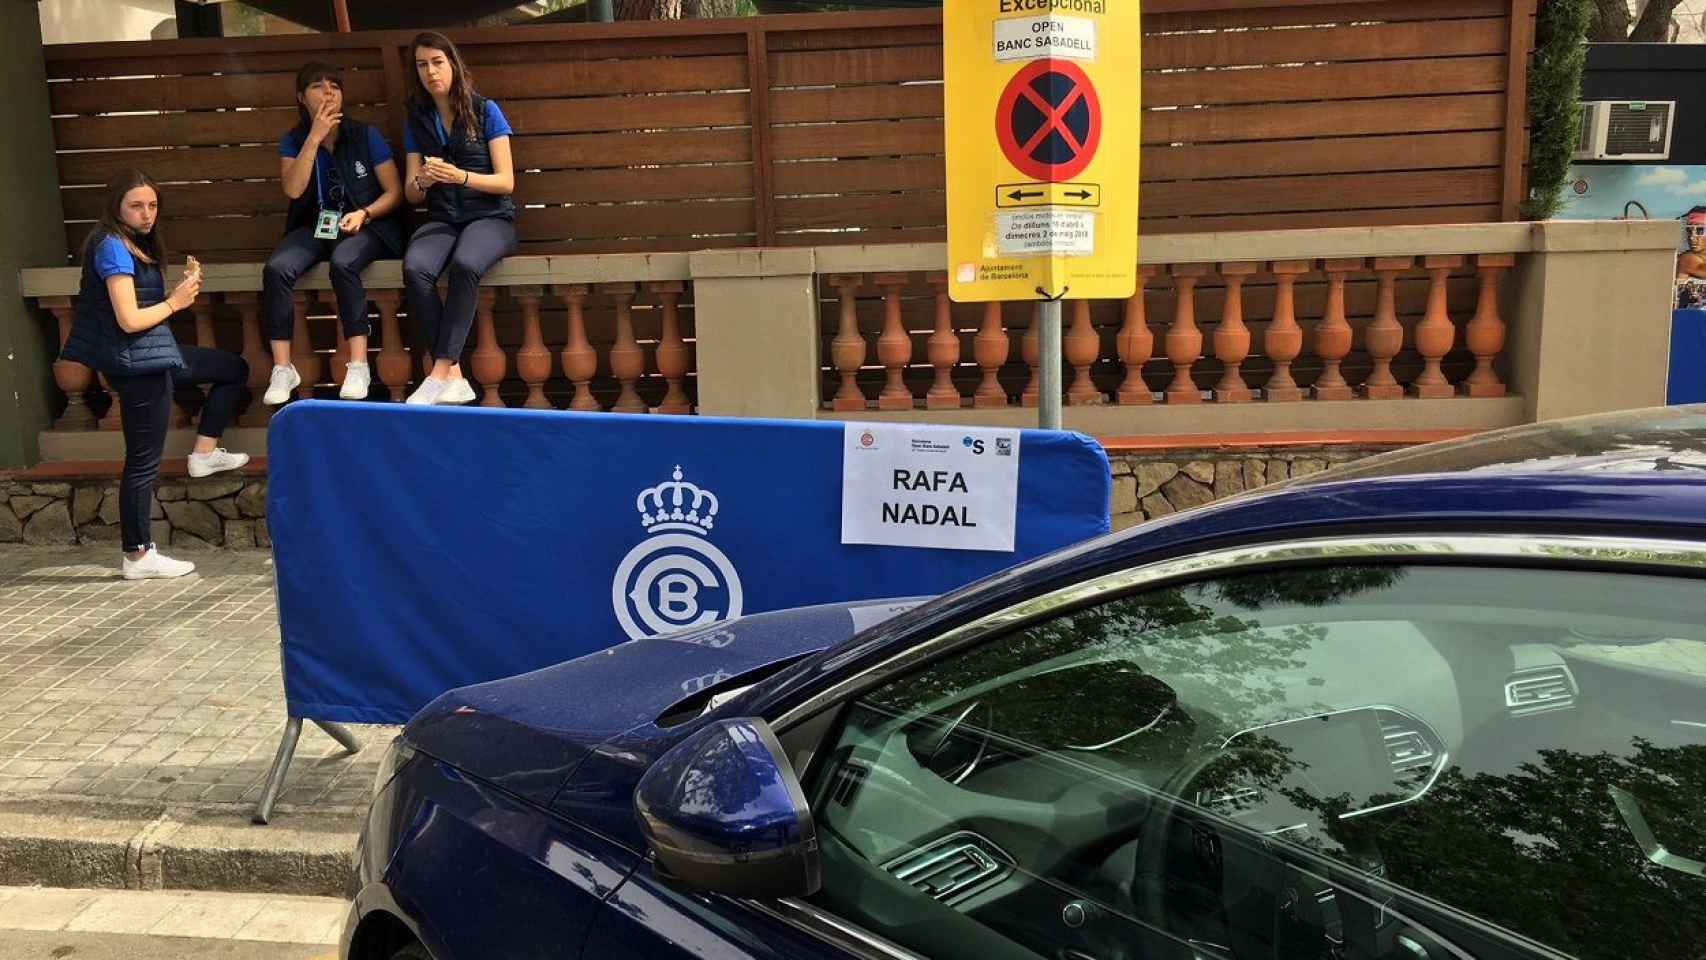 Rafa Nadal ya está en Barcelona. Este lunes ha aparcado su coche de la organización en la plaza que tiene reservada como Nº1 del Trofeo Conde de Godó 2018 /